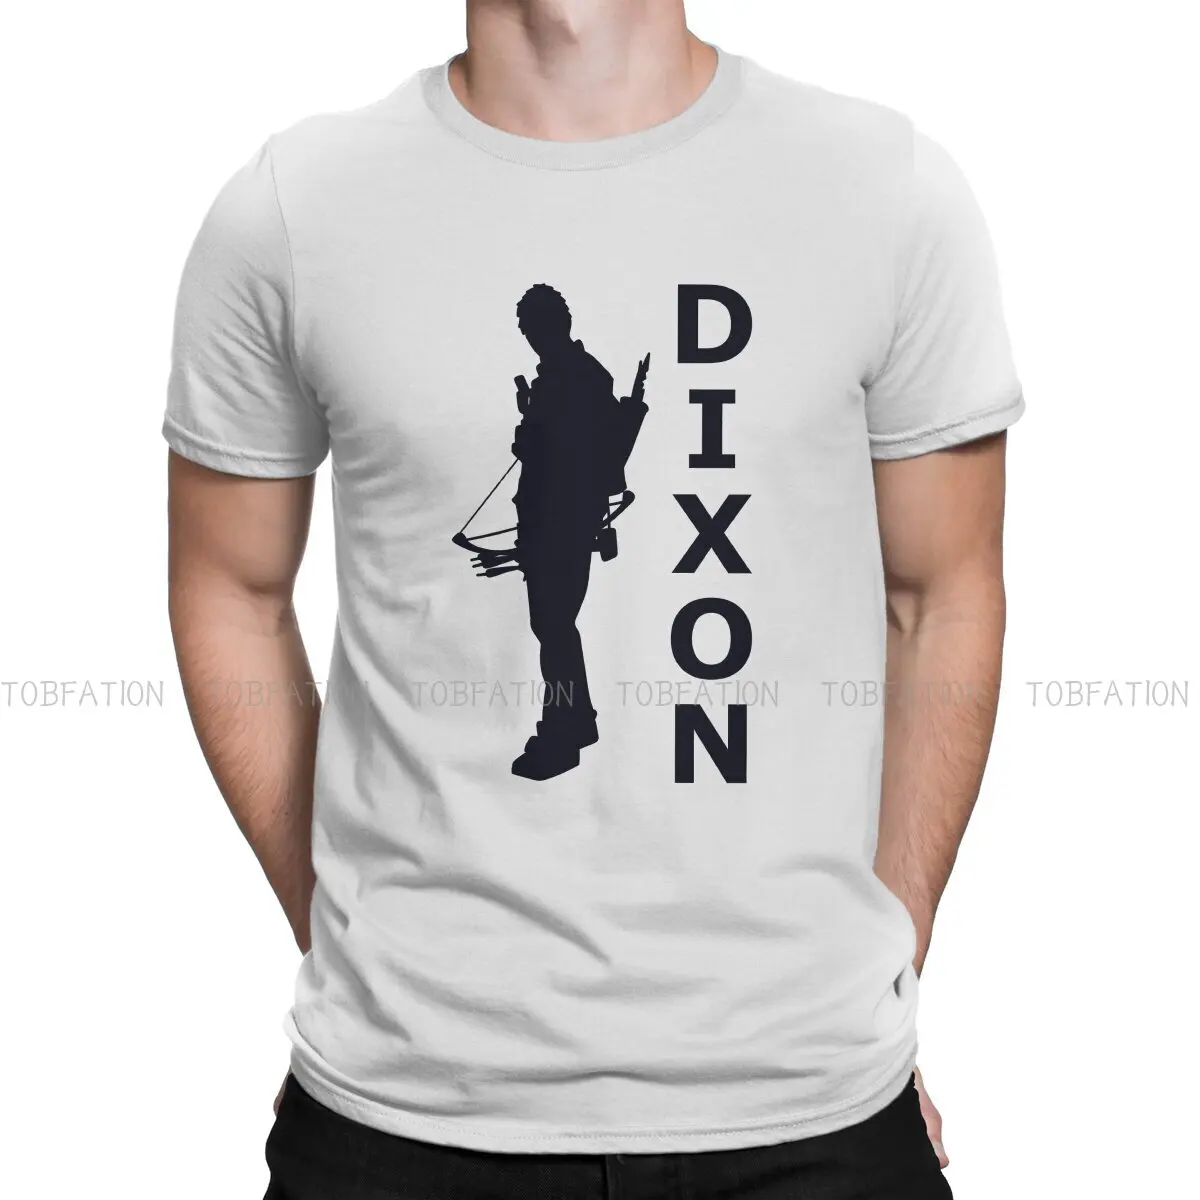 

Daryl Dixon Classic футболка с круглым воротником The Ходячие мертвецы Dary Dixon Fabric оригинальная Мужская футболка